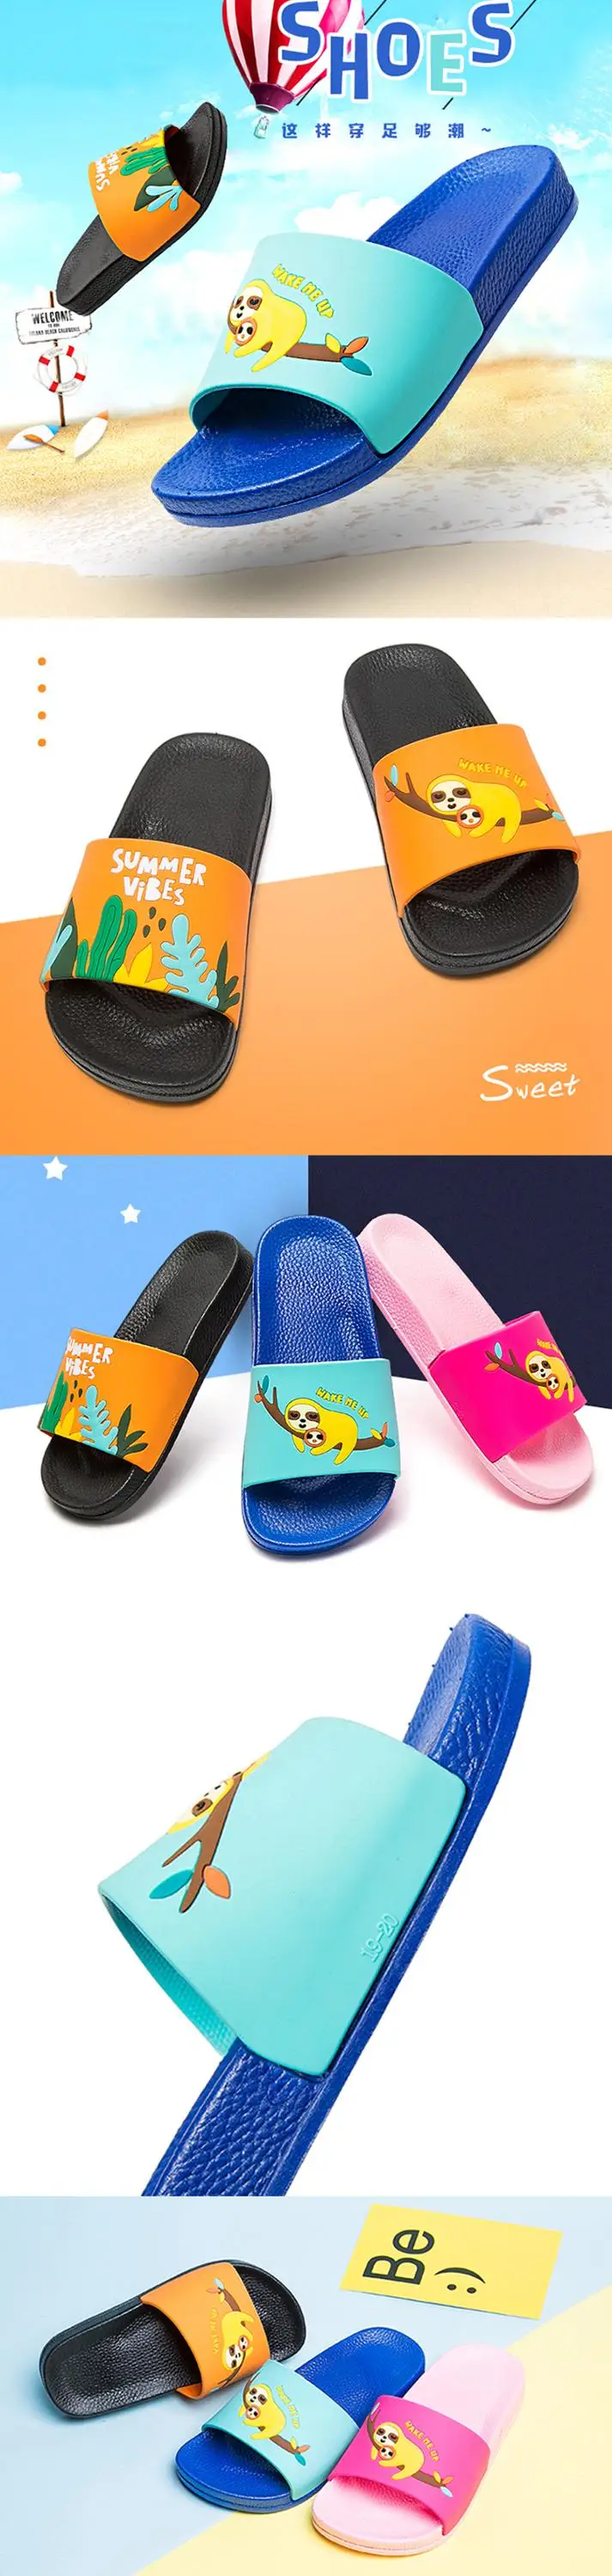 Niños Zapatillas Sandalias De Verano Playa Niños Personajes de Dibujos Animados Calzado Nuevo Diseño